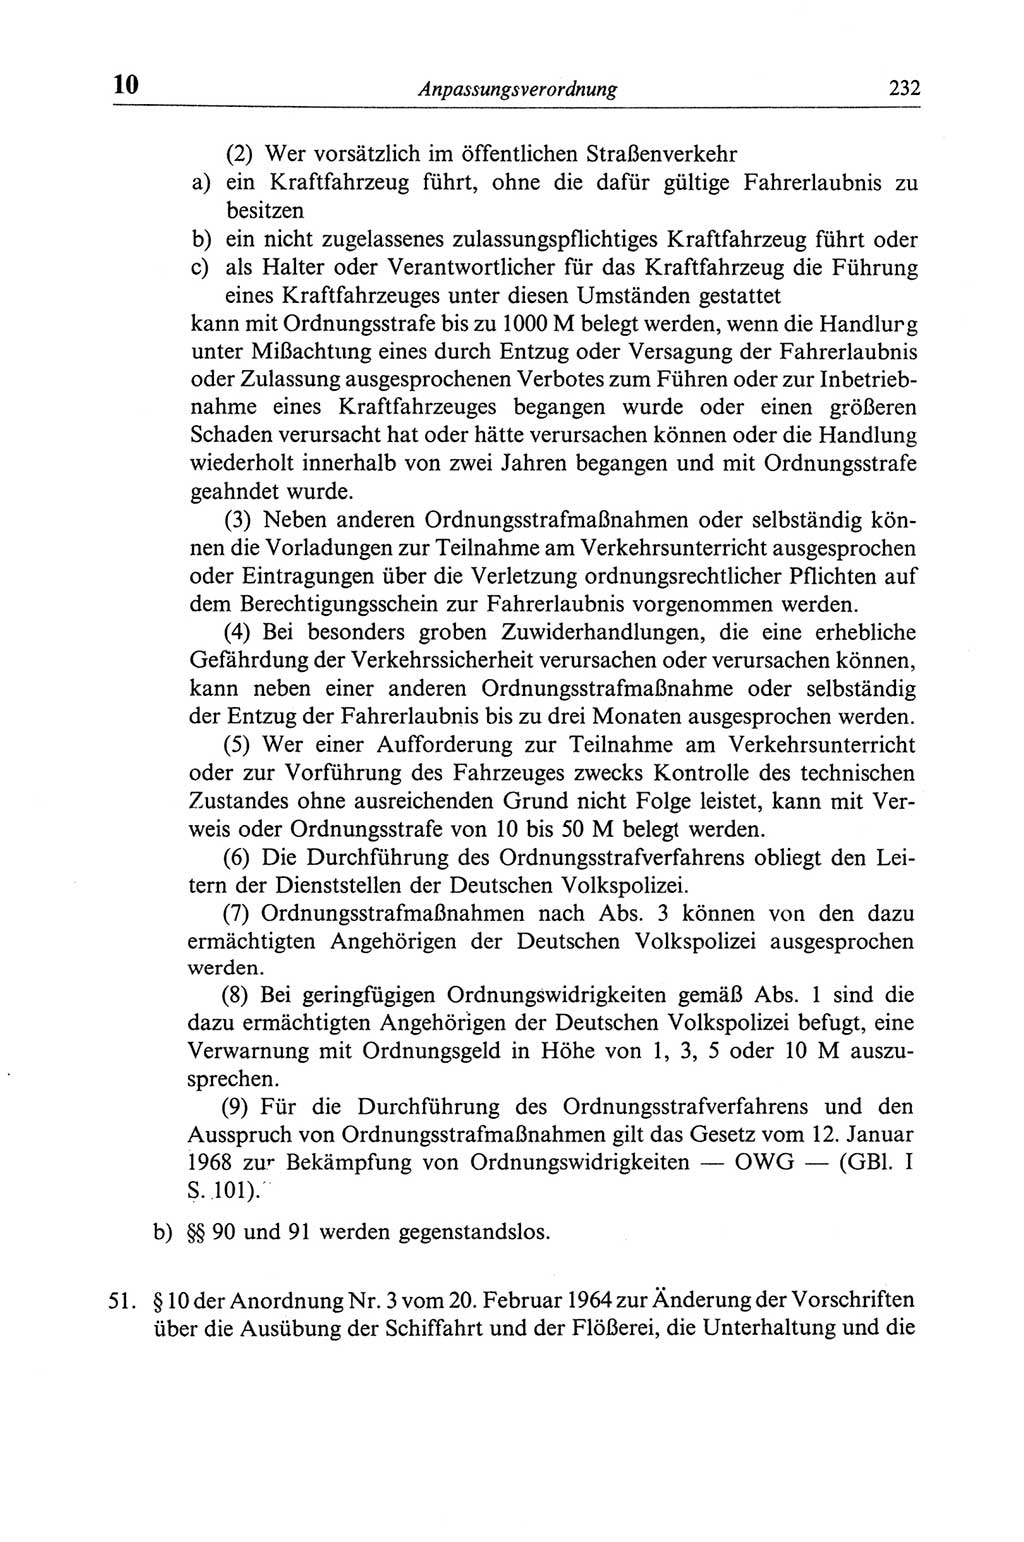 Strafgesetzbuch (StGB) der Deutschen Demokratischen Republik (DDR) und angrenzende Gesetze und Bestimmungen 1968, Seite 232 (StGB Ges. Best. DDR 1968, S. 232)